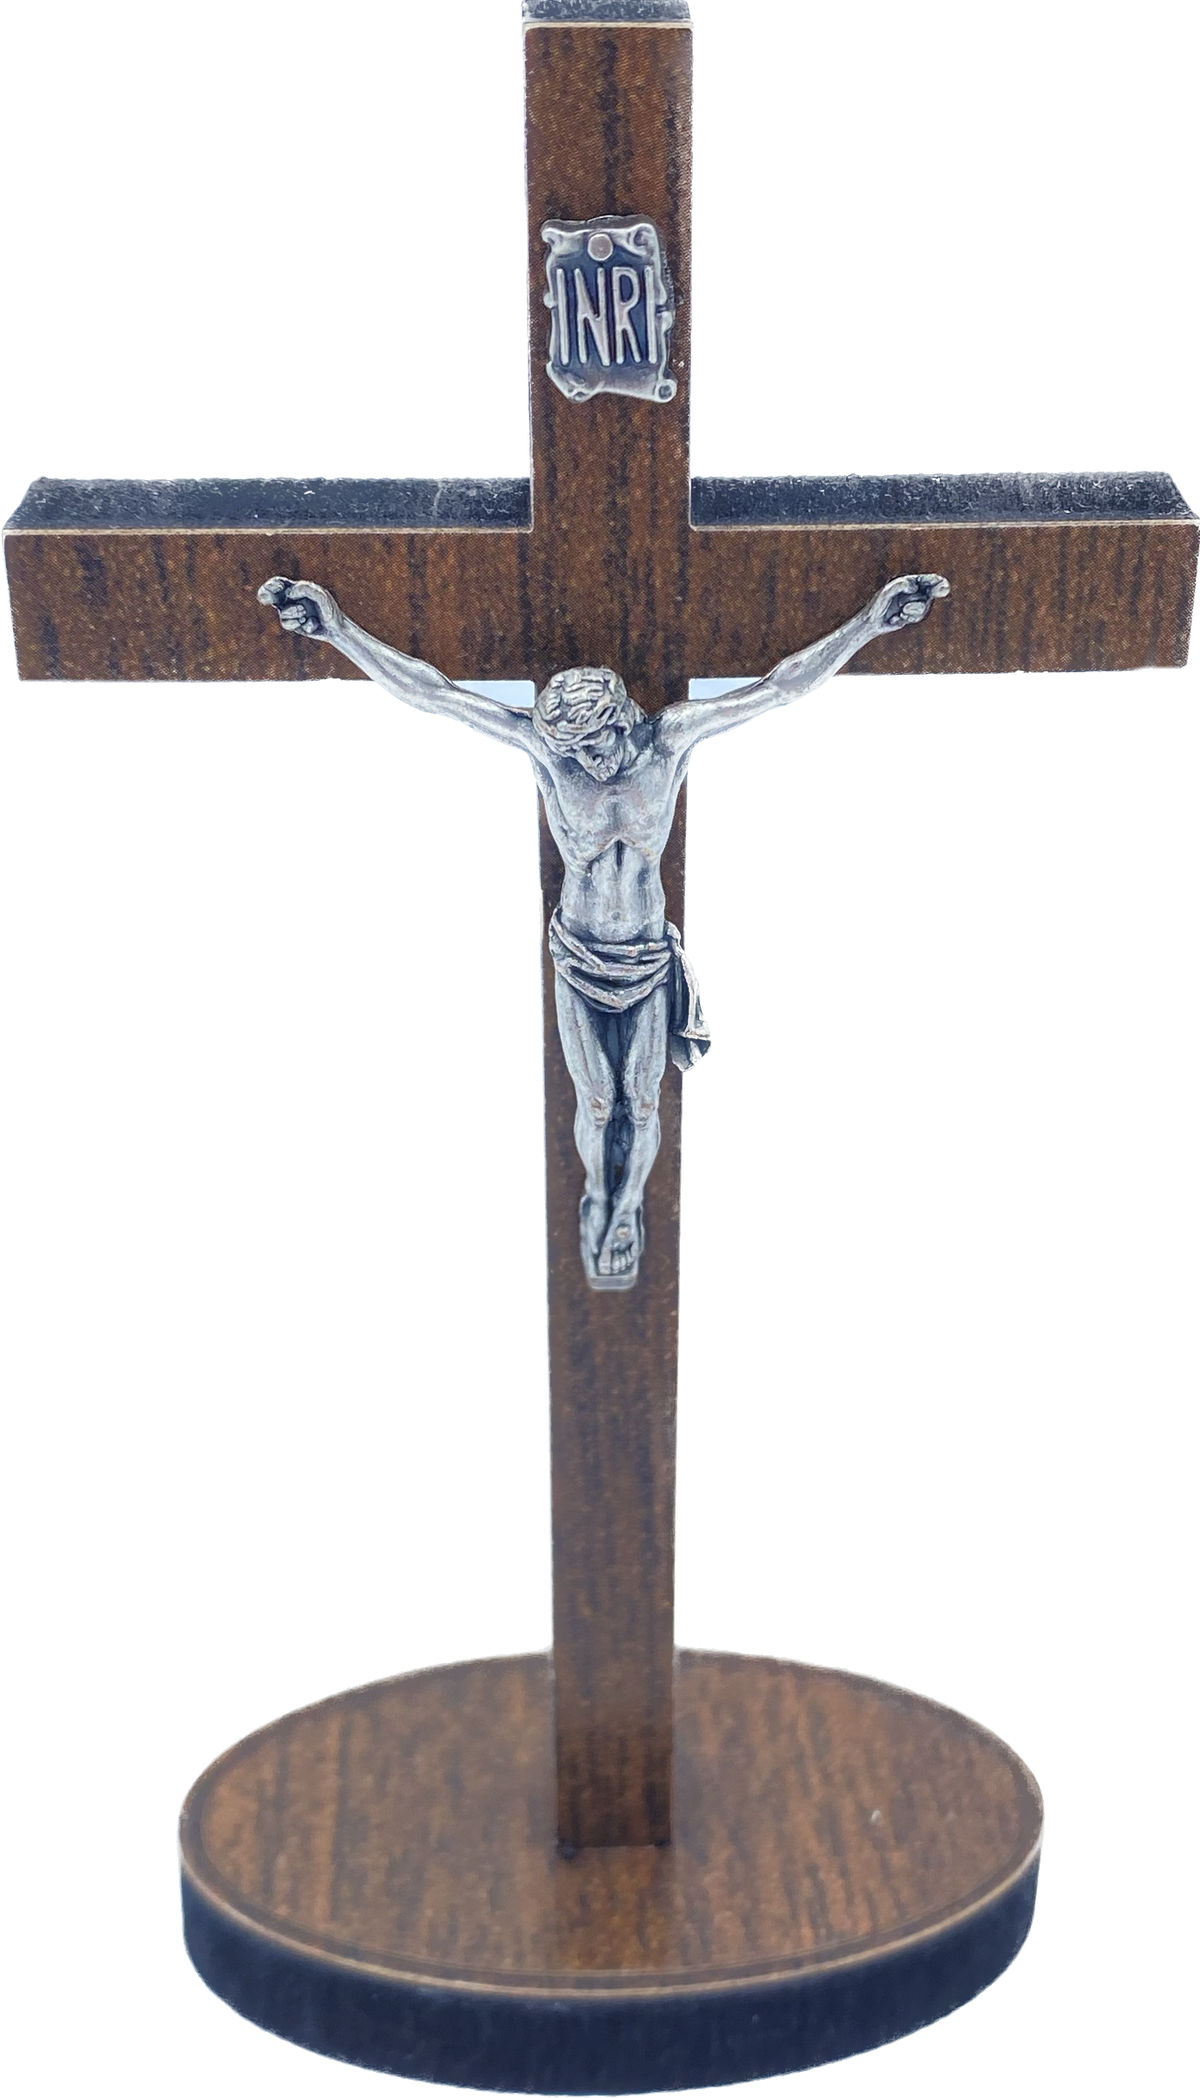 CRUCIFIX - PETITE Croix bois sur socle